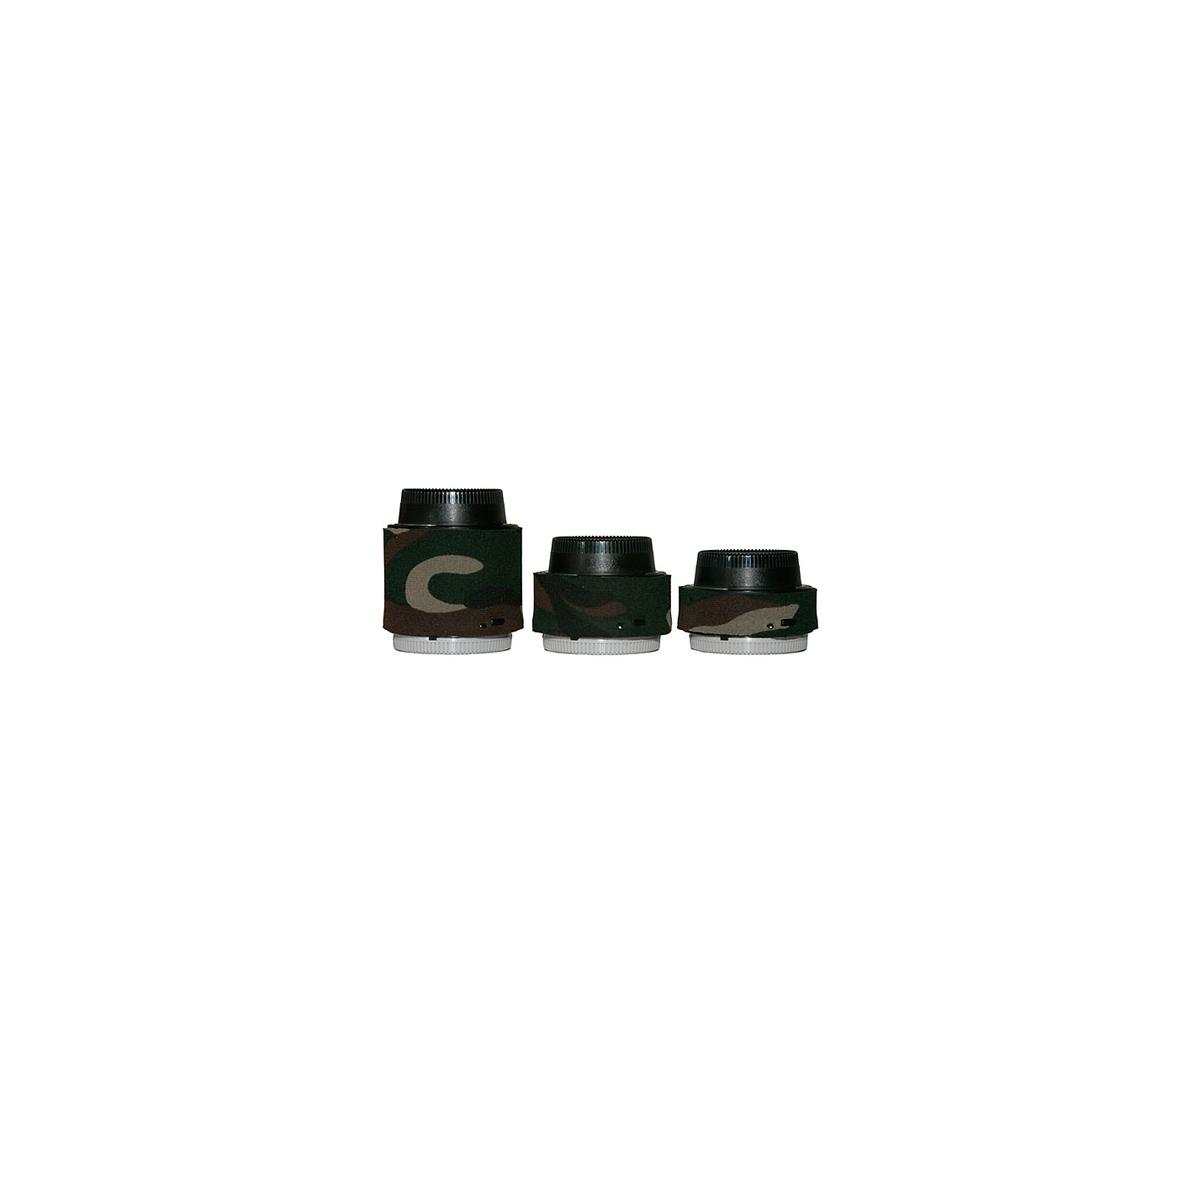 Image of LensCoat Lens Covers for Nikon Teleconverter Set